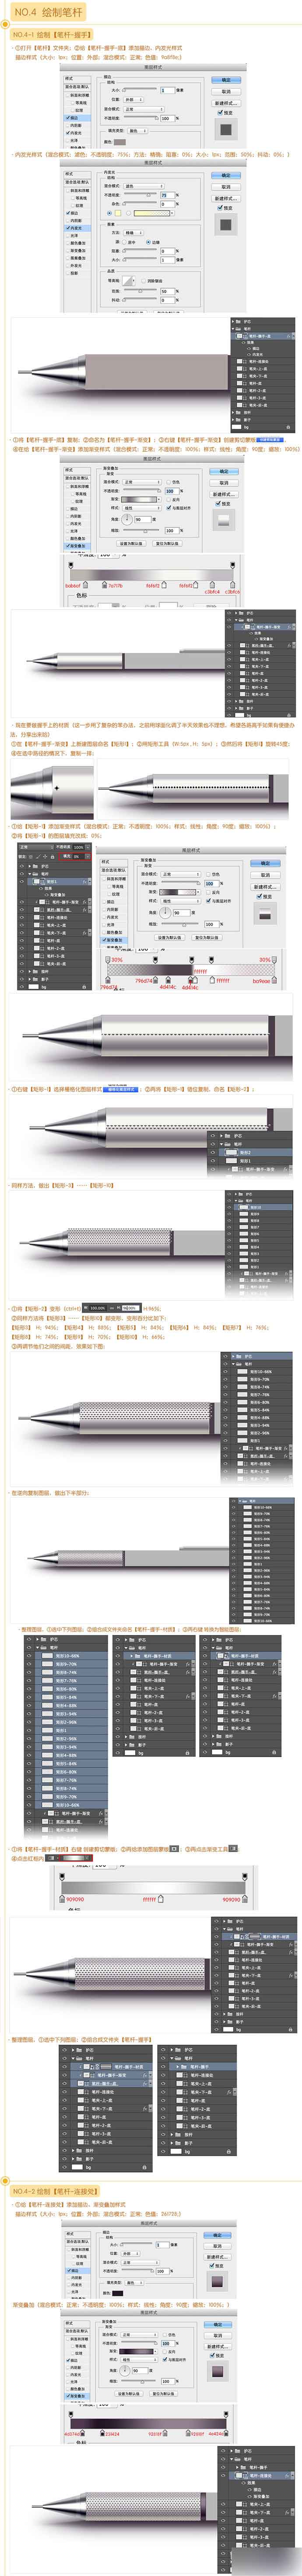 PS鼠绘一支逼真质感的自动铅笔